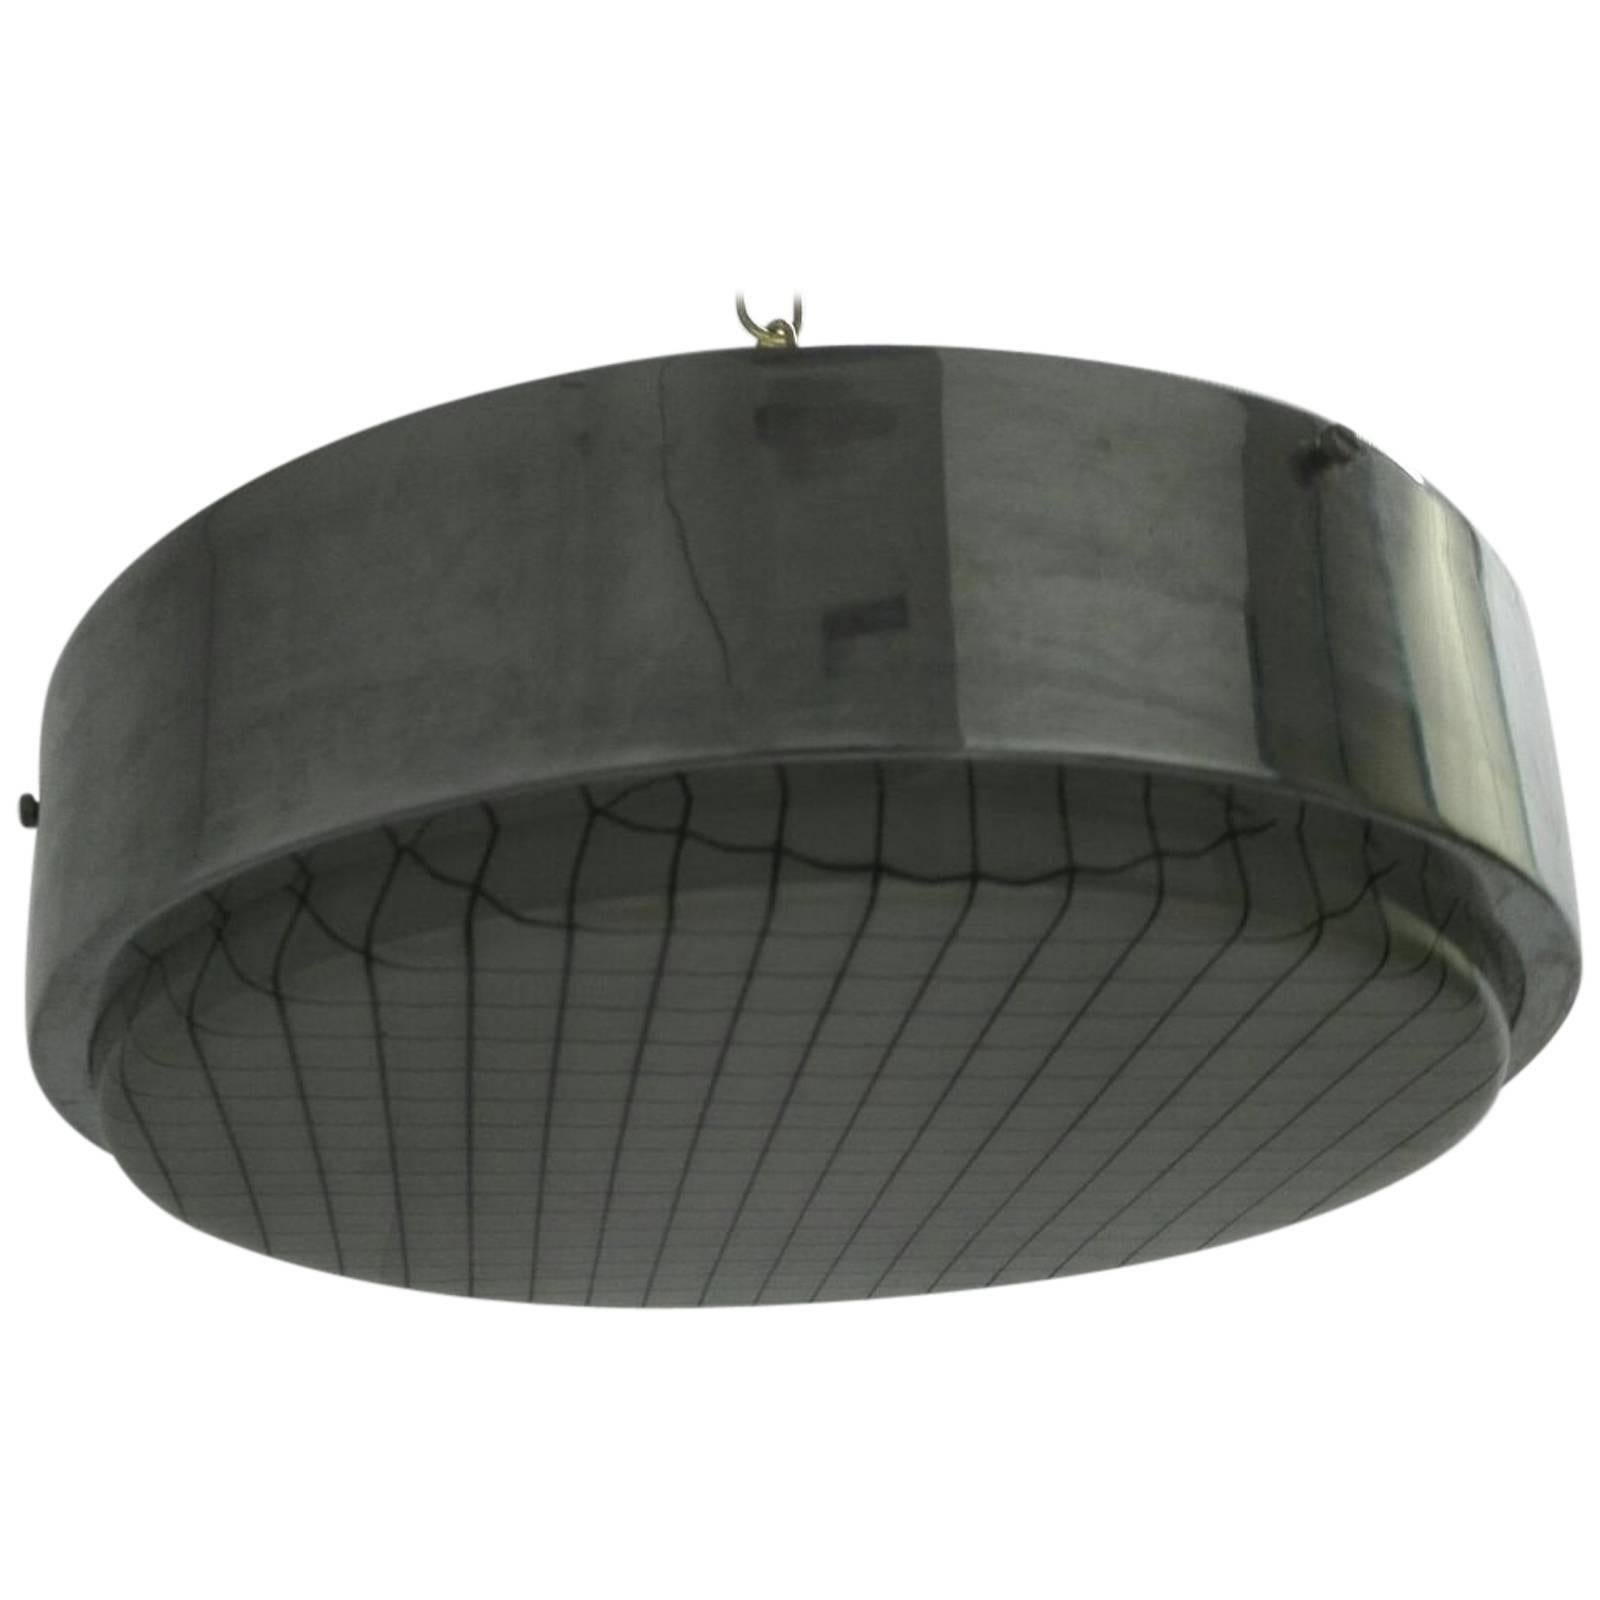 Ceiling Lamp Italian Design